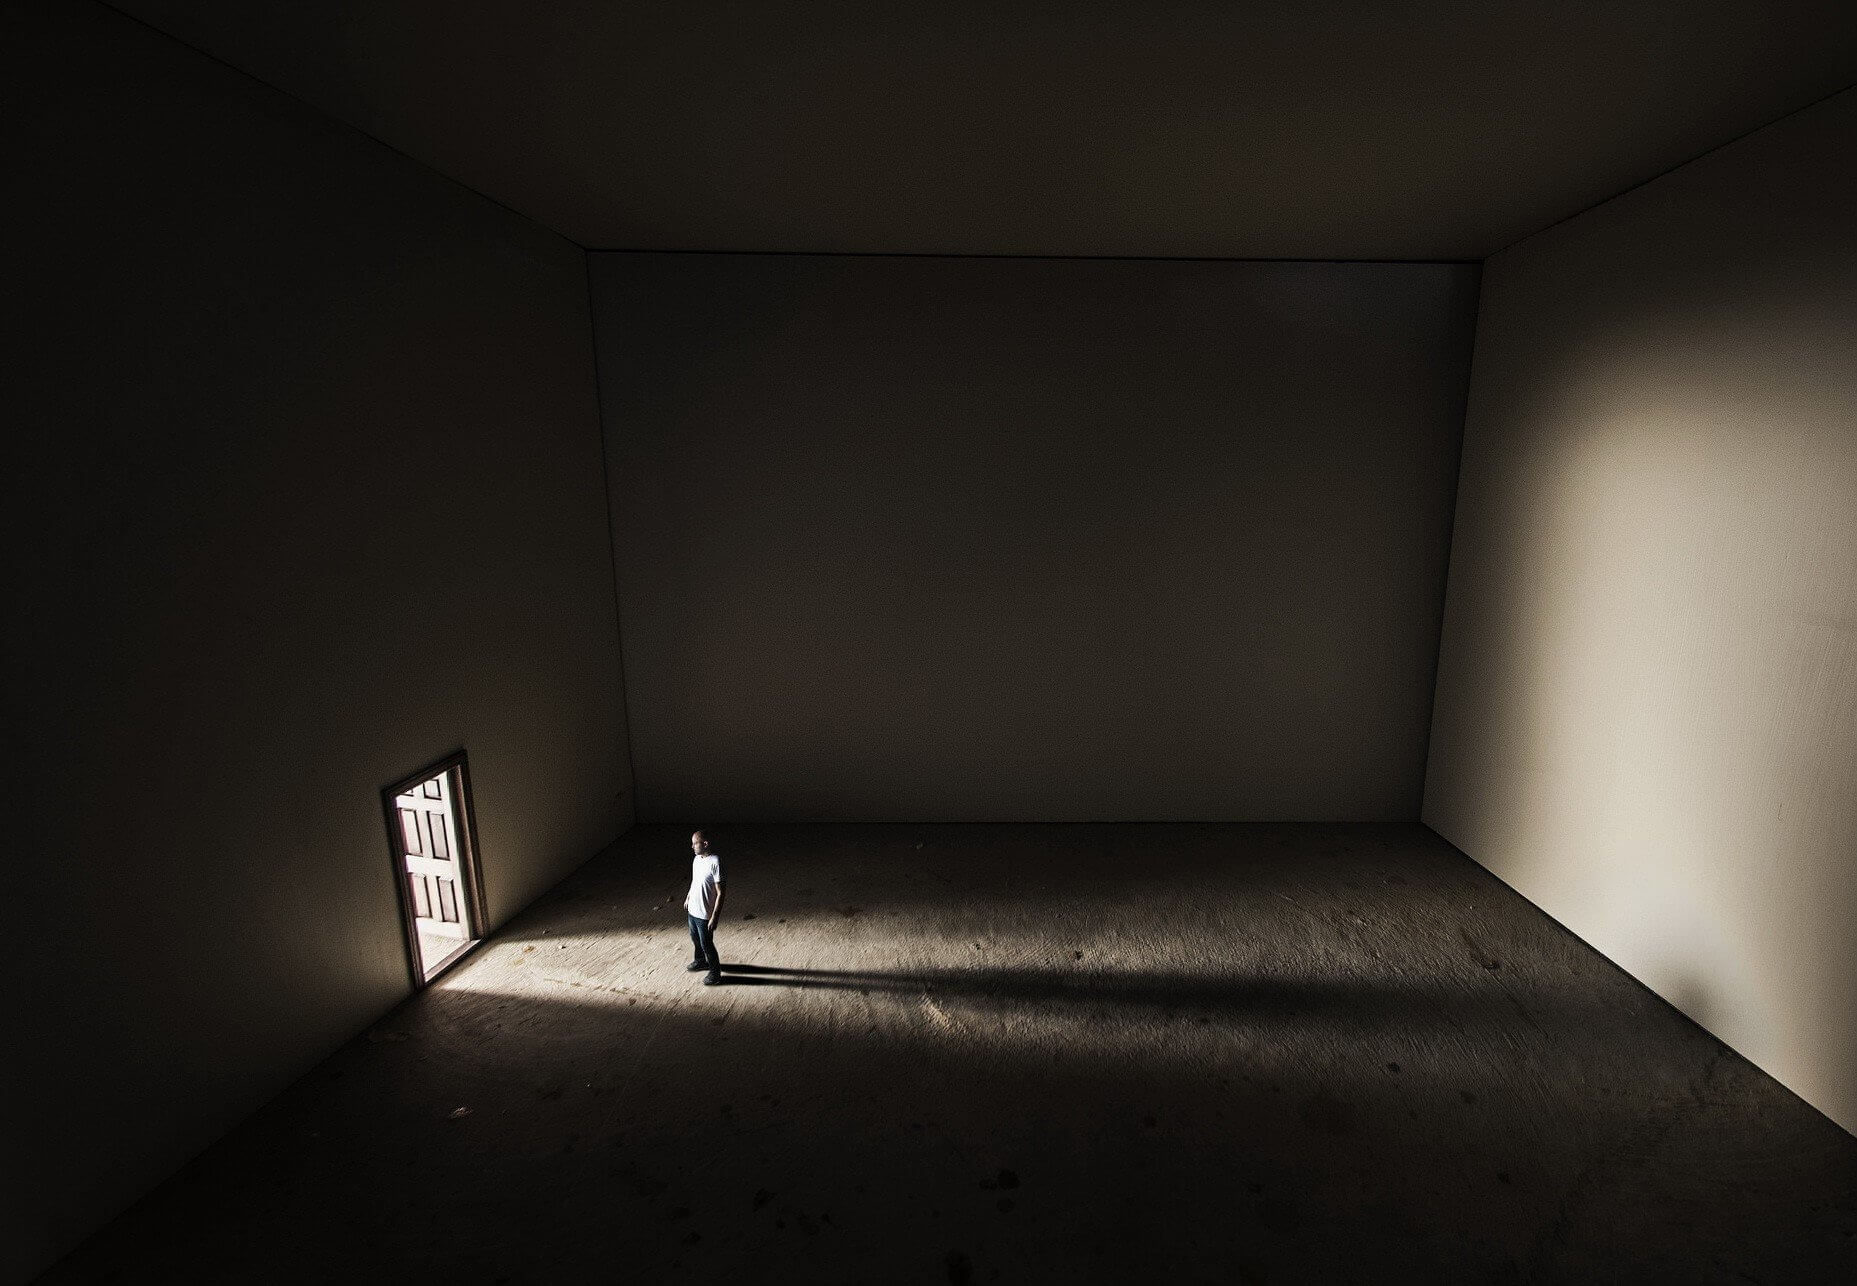 Тут в 4 стенах. Пустая комната. Пустое пространство. Человек в пустой комнате. Комната без окон и дверей.